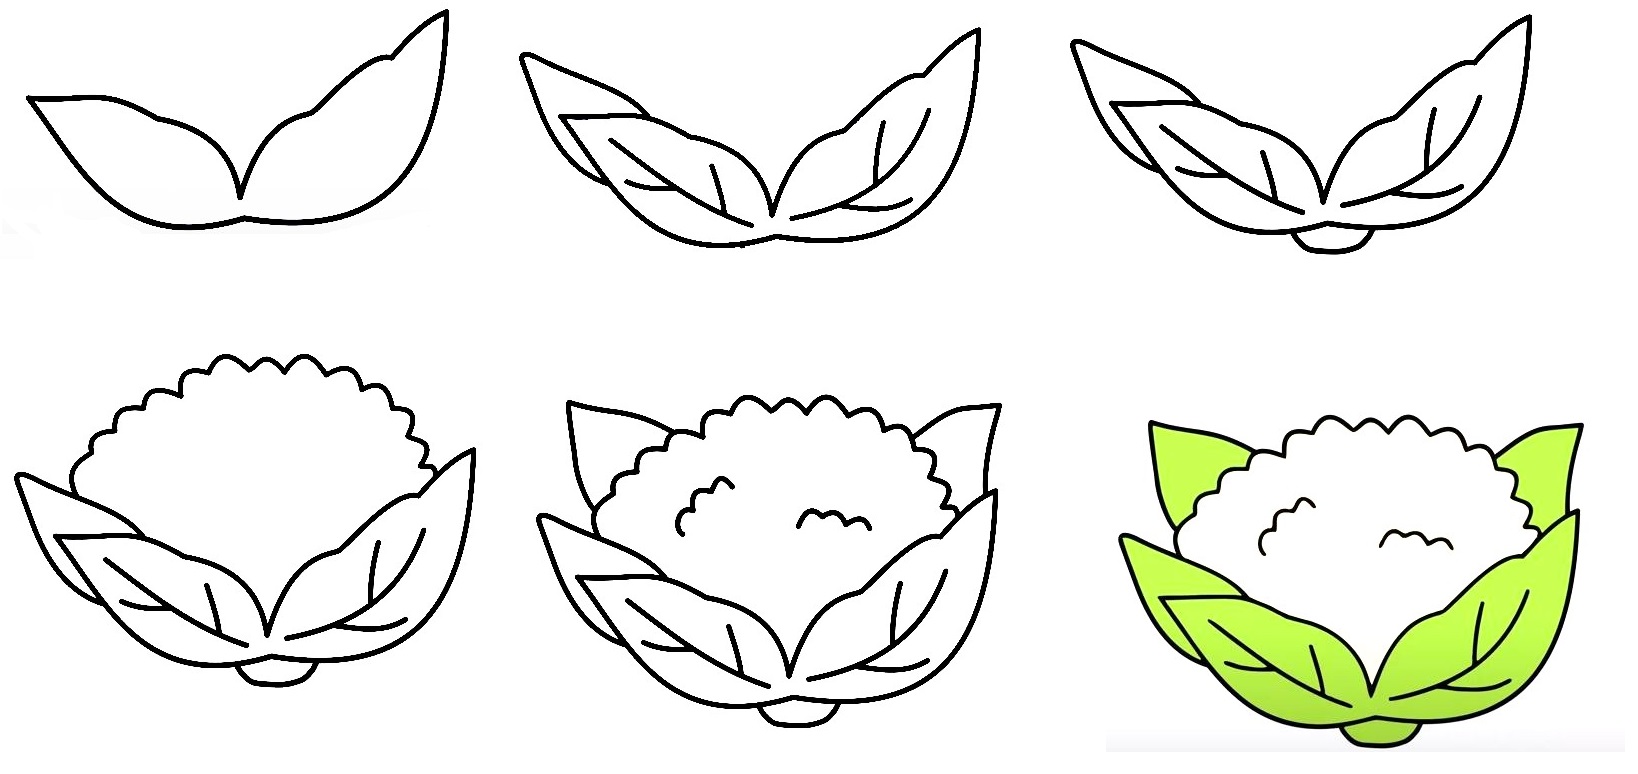 How To Draw Cauliflower